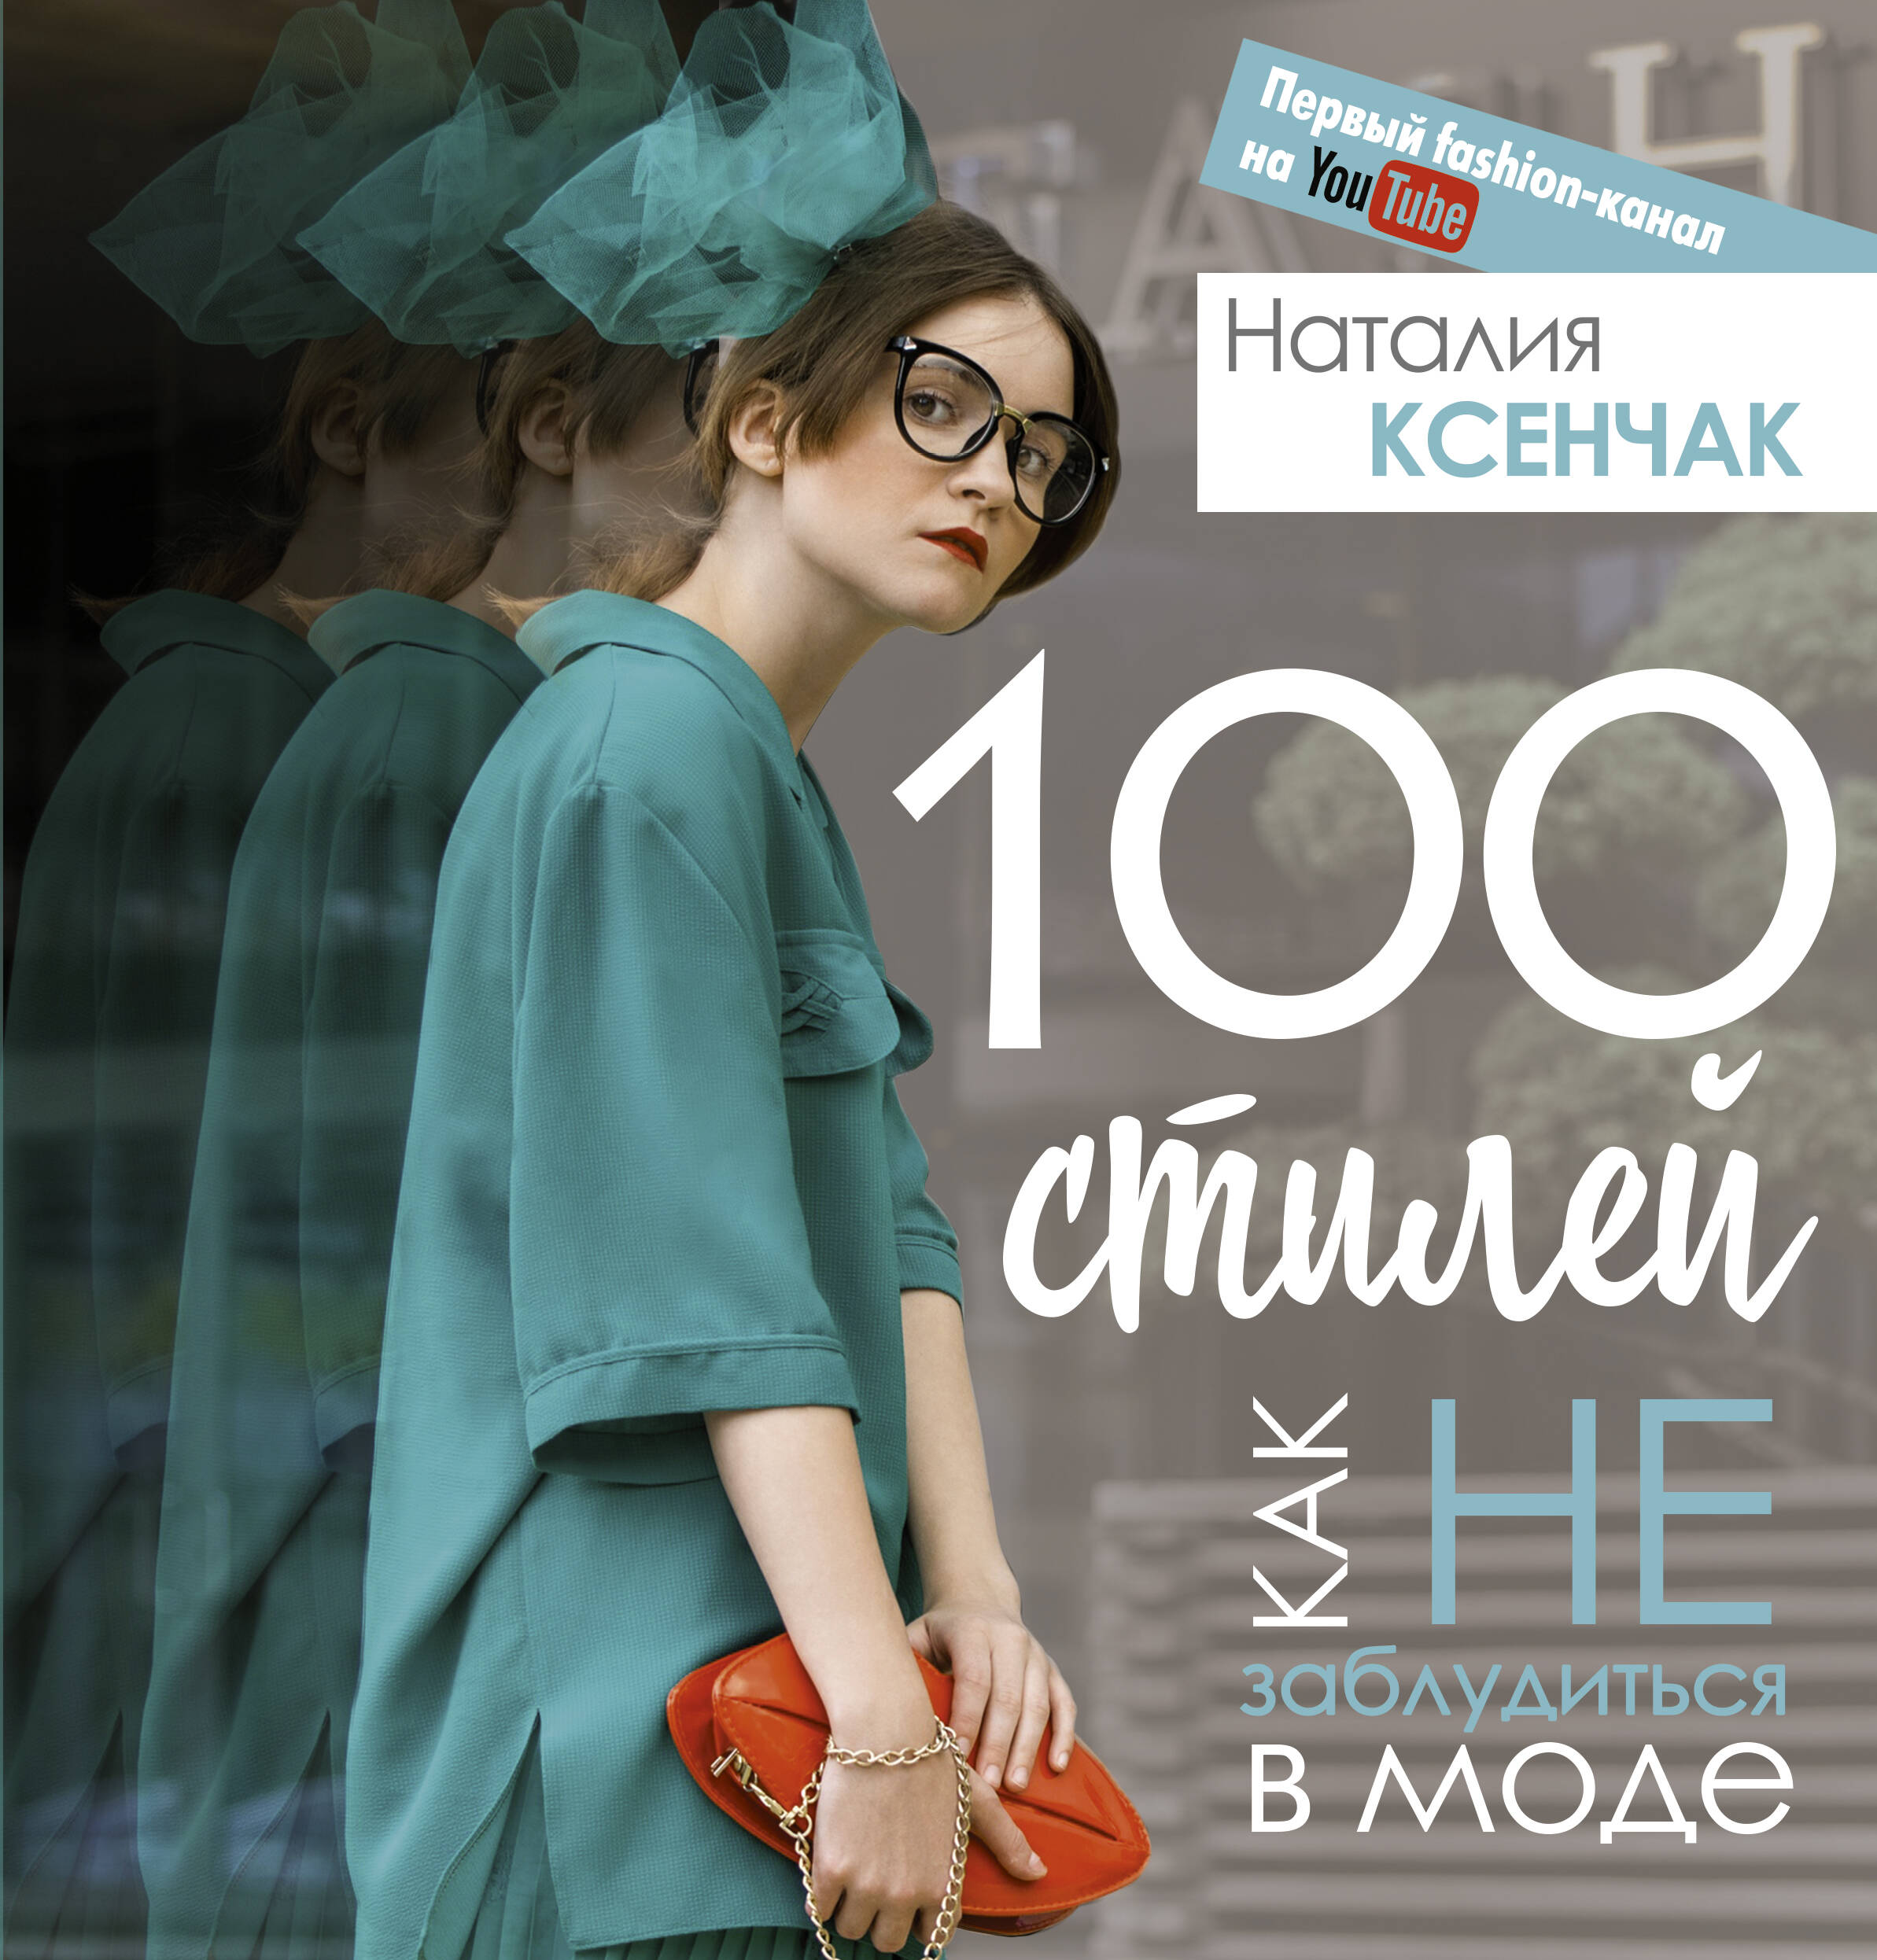 Ксенчак Наталия Андреевна 100 стилей. Как не заблудиться в моде - страница 0